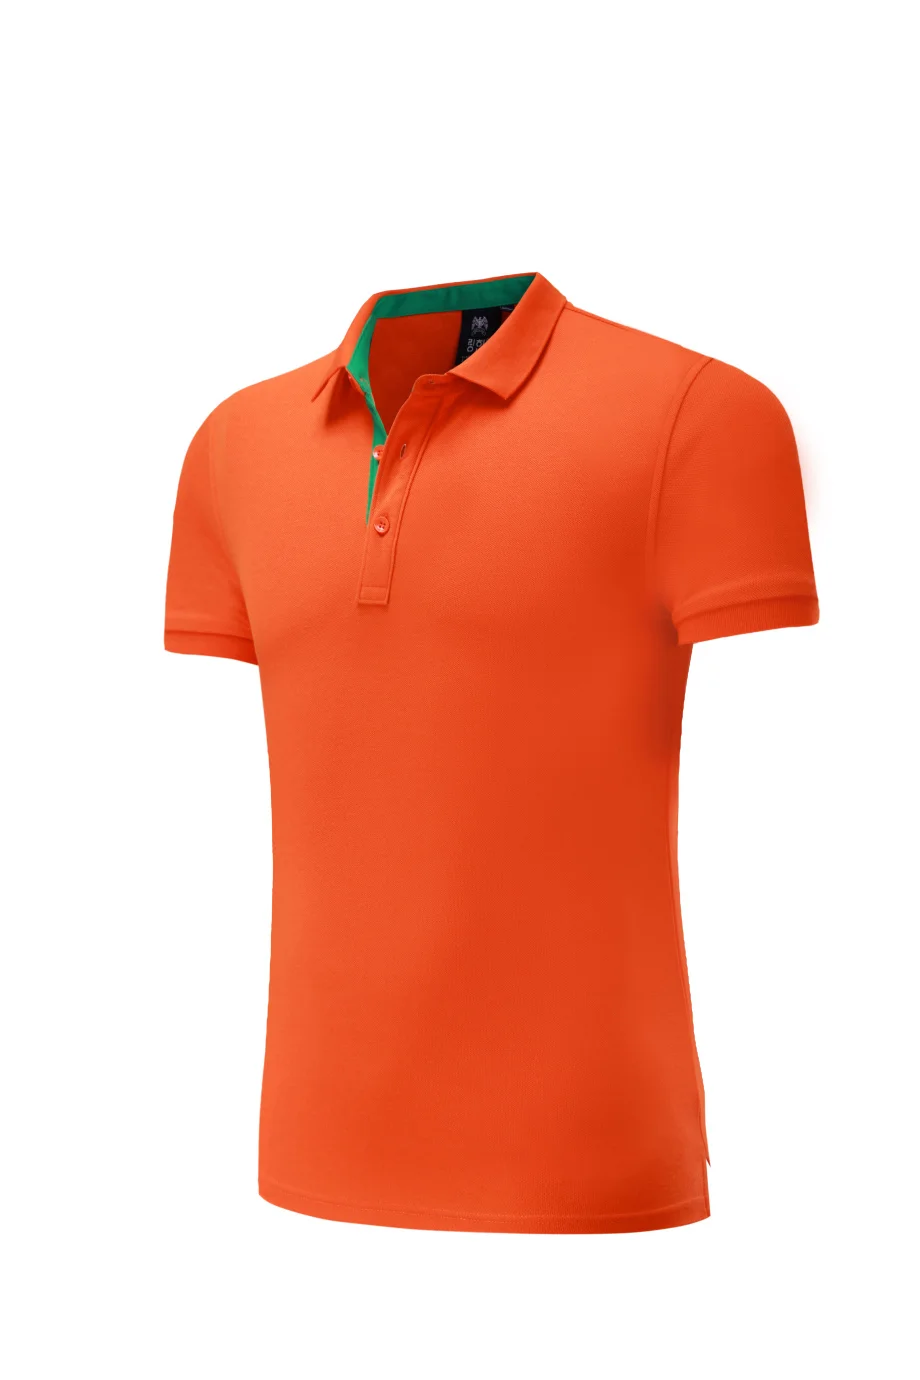 Бадминтон рубашка для мужчин/для женщин, настольный теннис футболки, теннис одежда спортивная одежда комплект, пинг понг футболка футбол футболка для бега рубашка